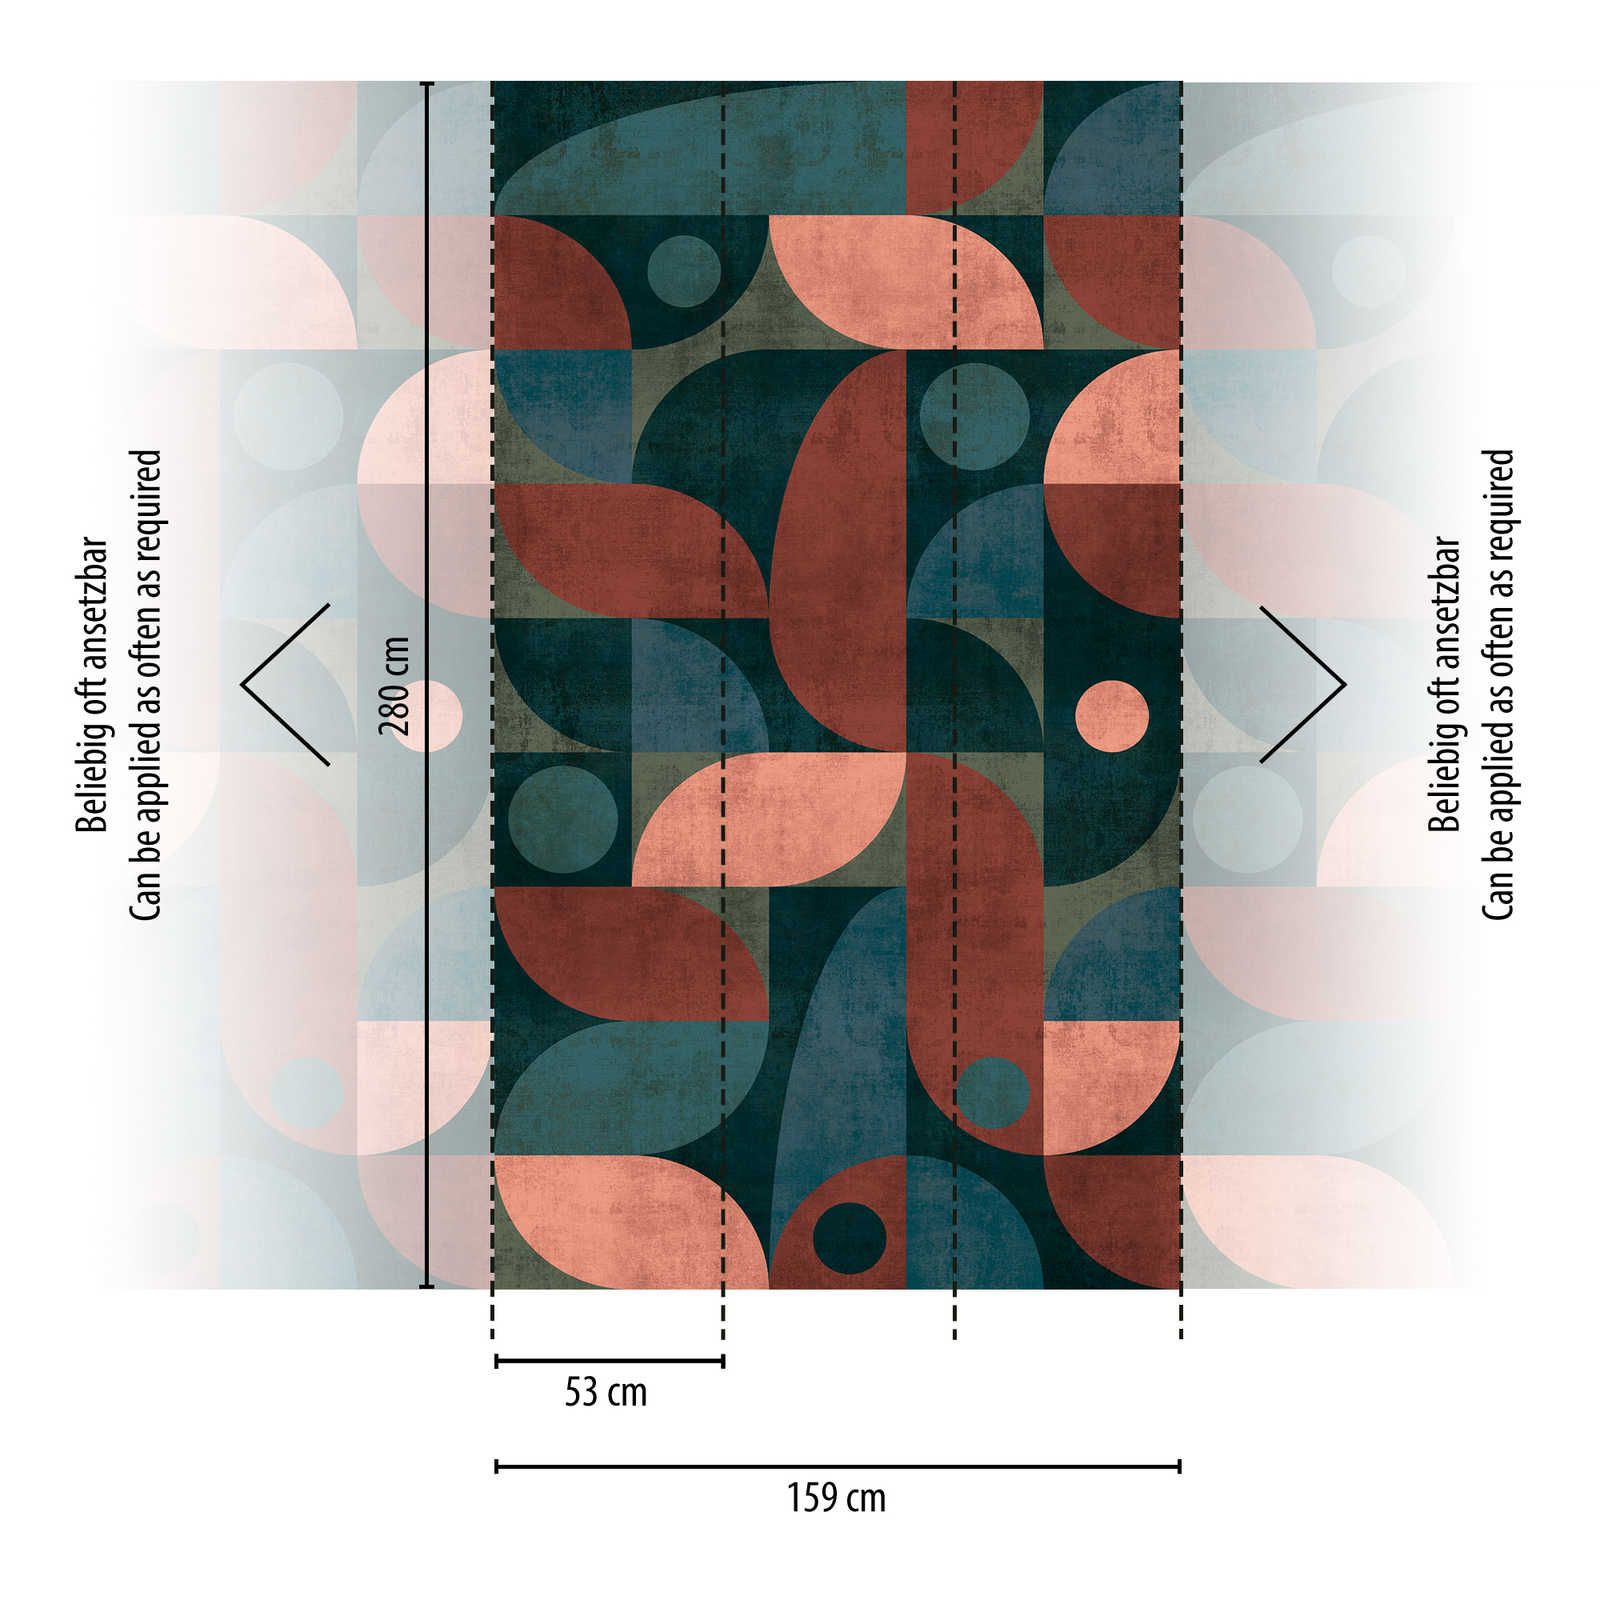             Grafisch patroonbehang cirkels en ronde vormen met structuurlook - blauw, rood, groen
        